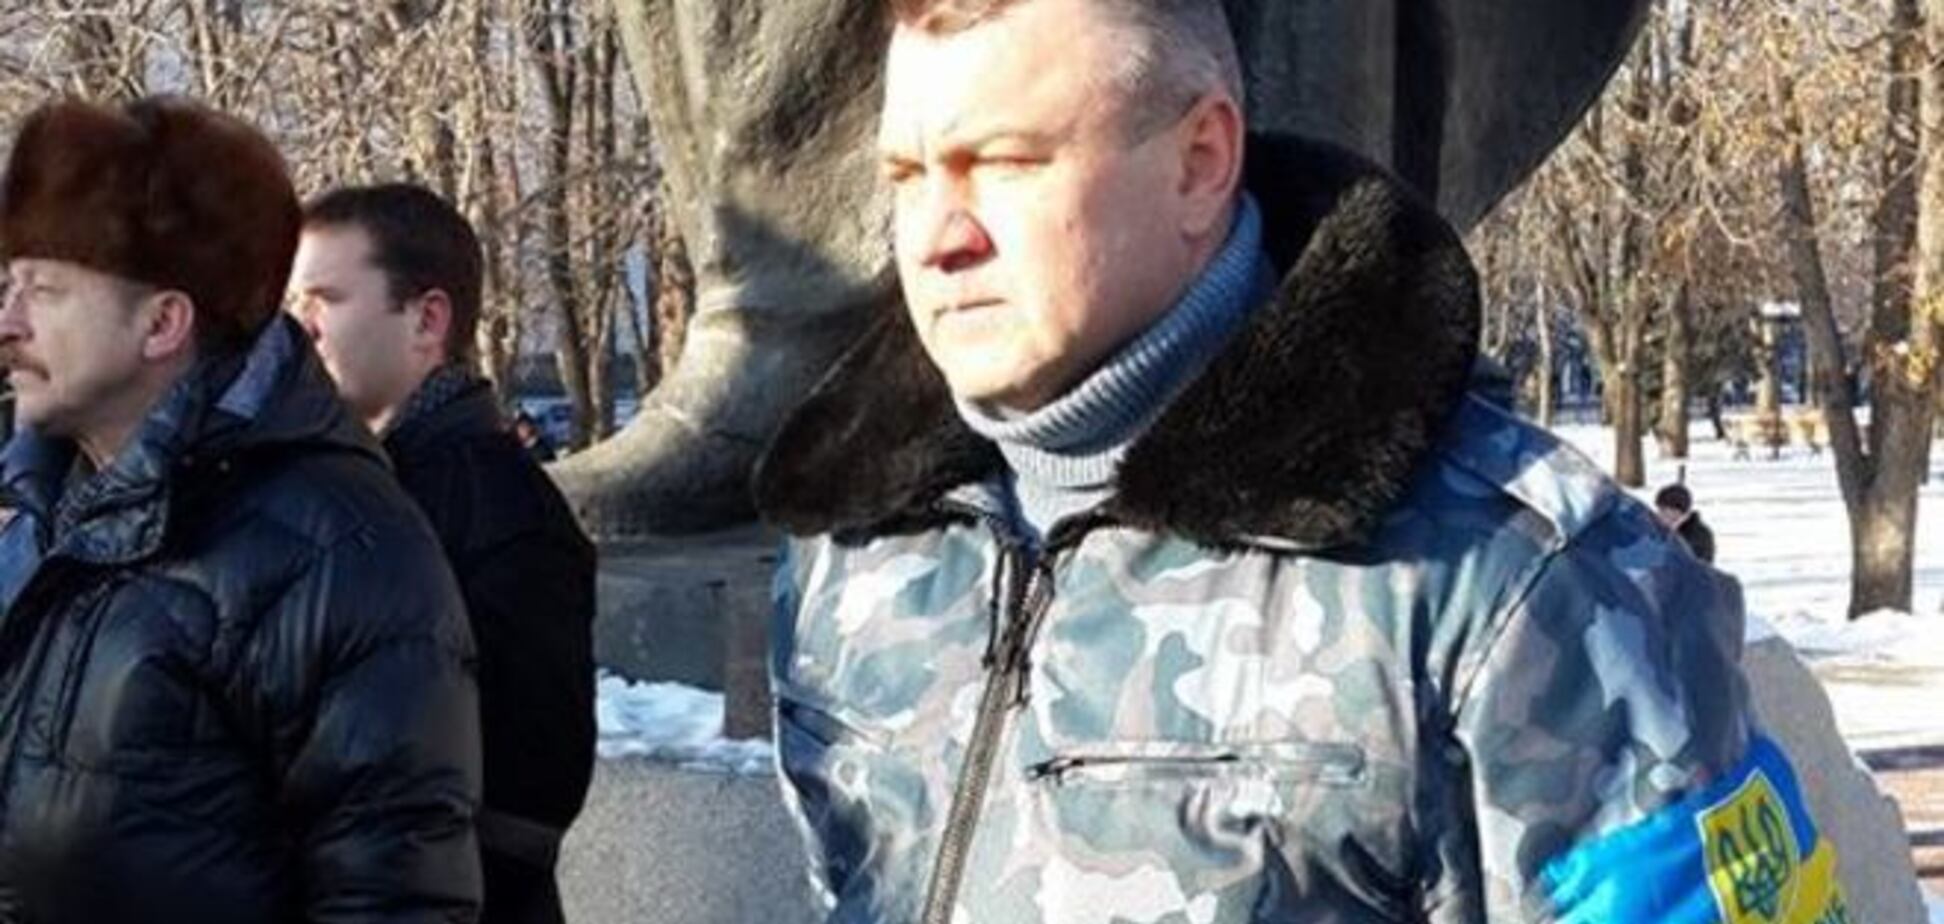 СМИ выдали пострадавшего от рук луганских боевиков адвоката за террориста